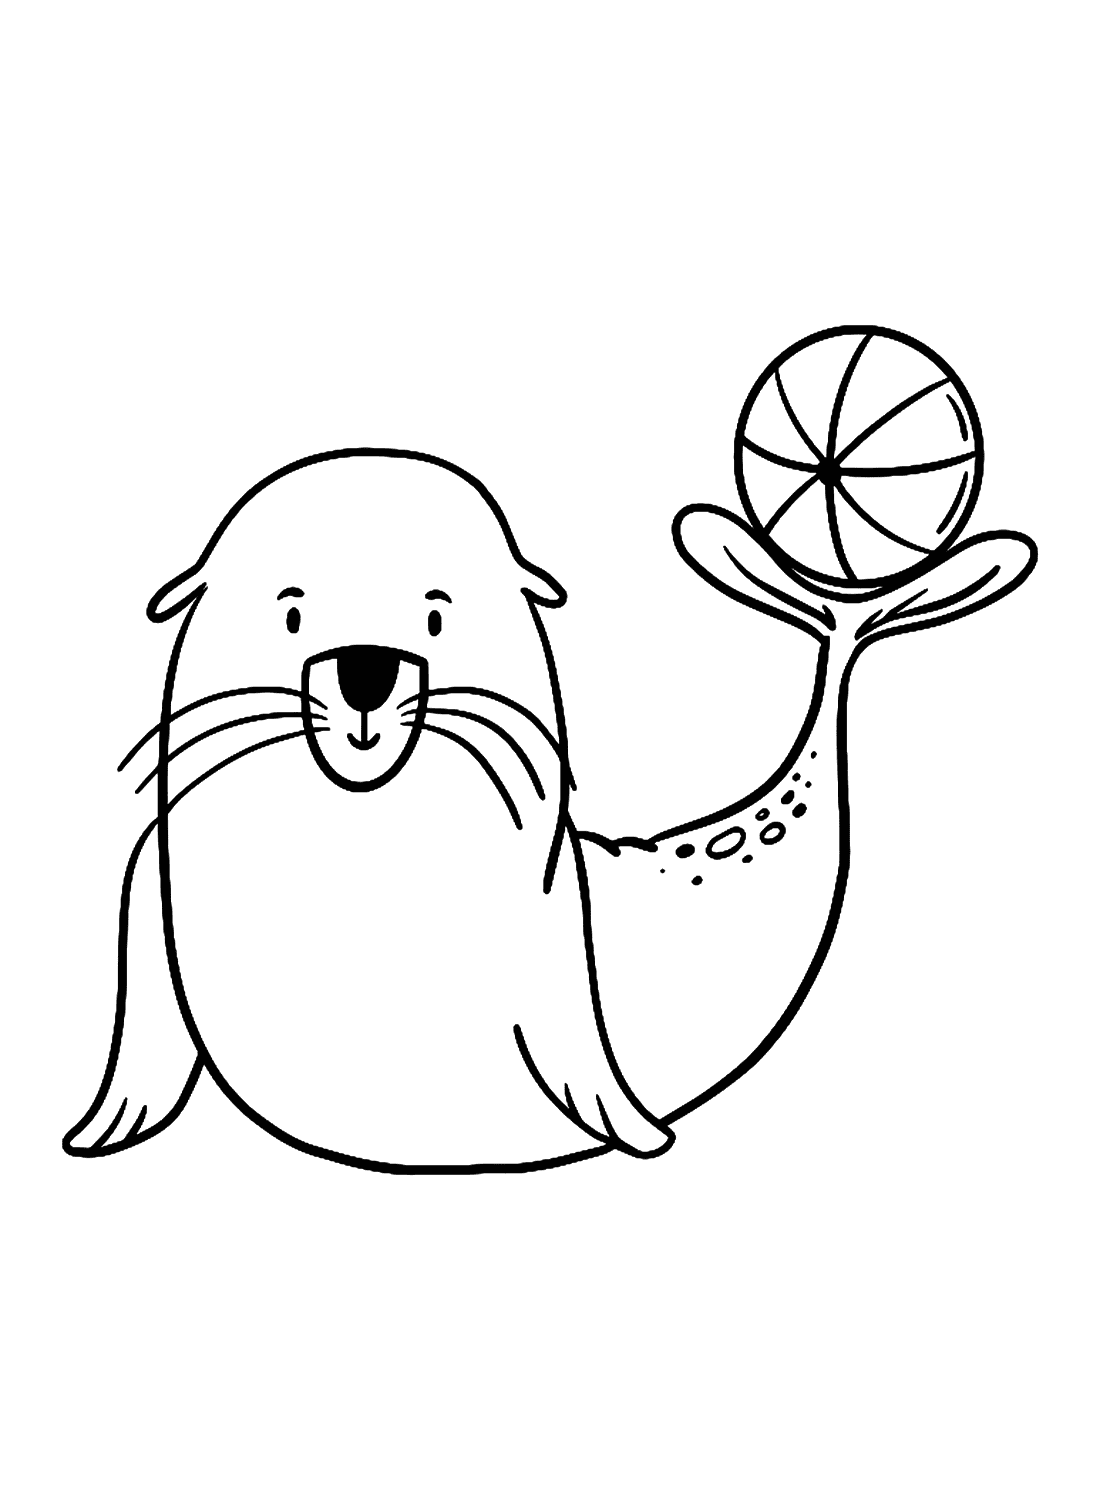 Leone marino del fumetto che gioca con una palla da Leone marino